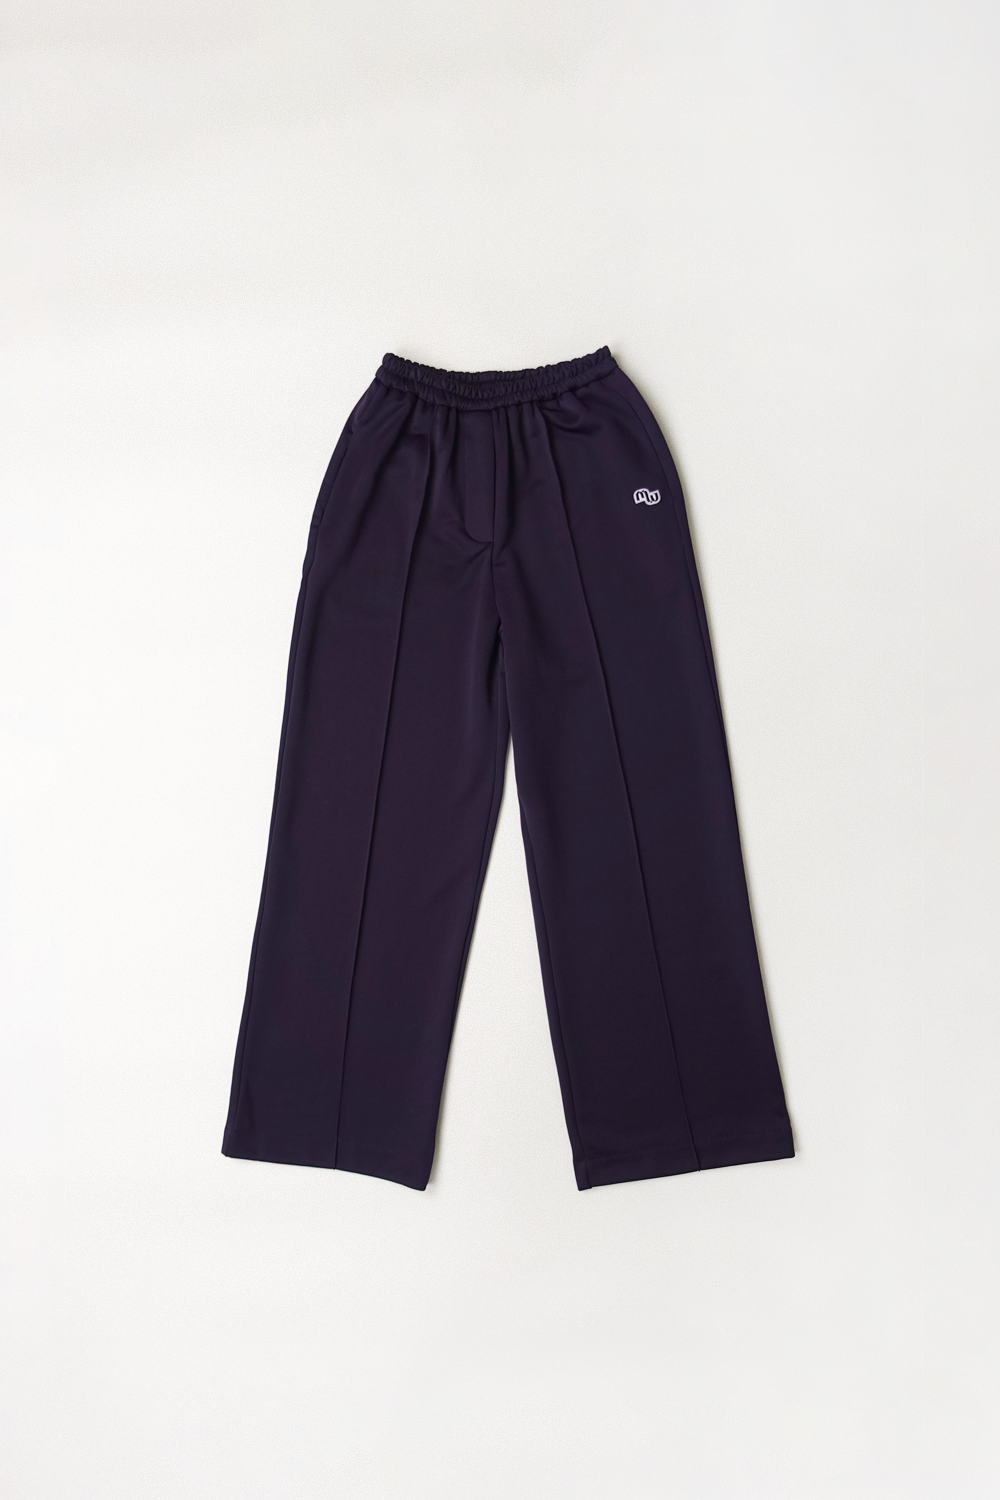 M Track Pants (Purple)